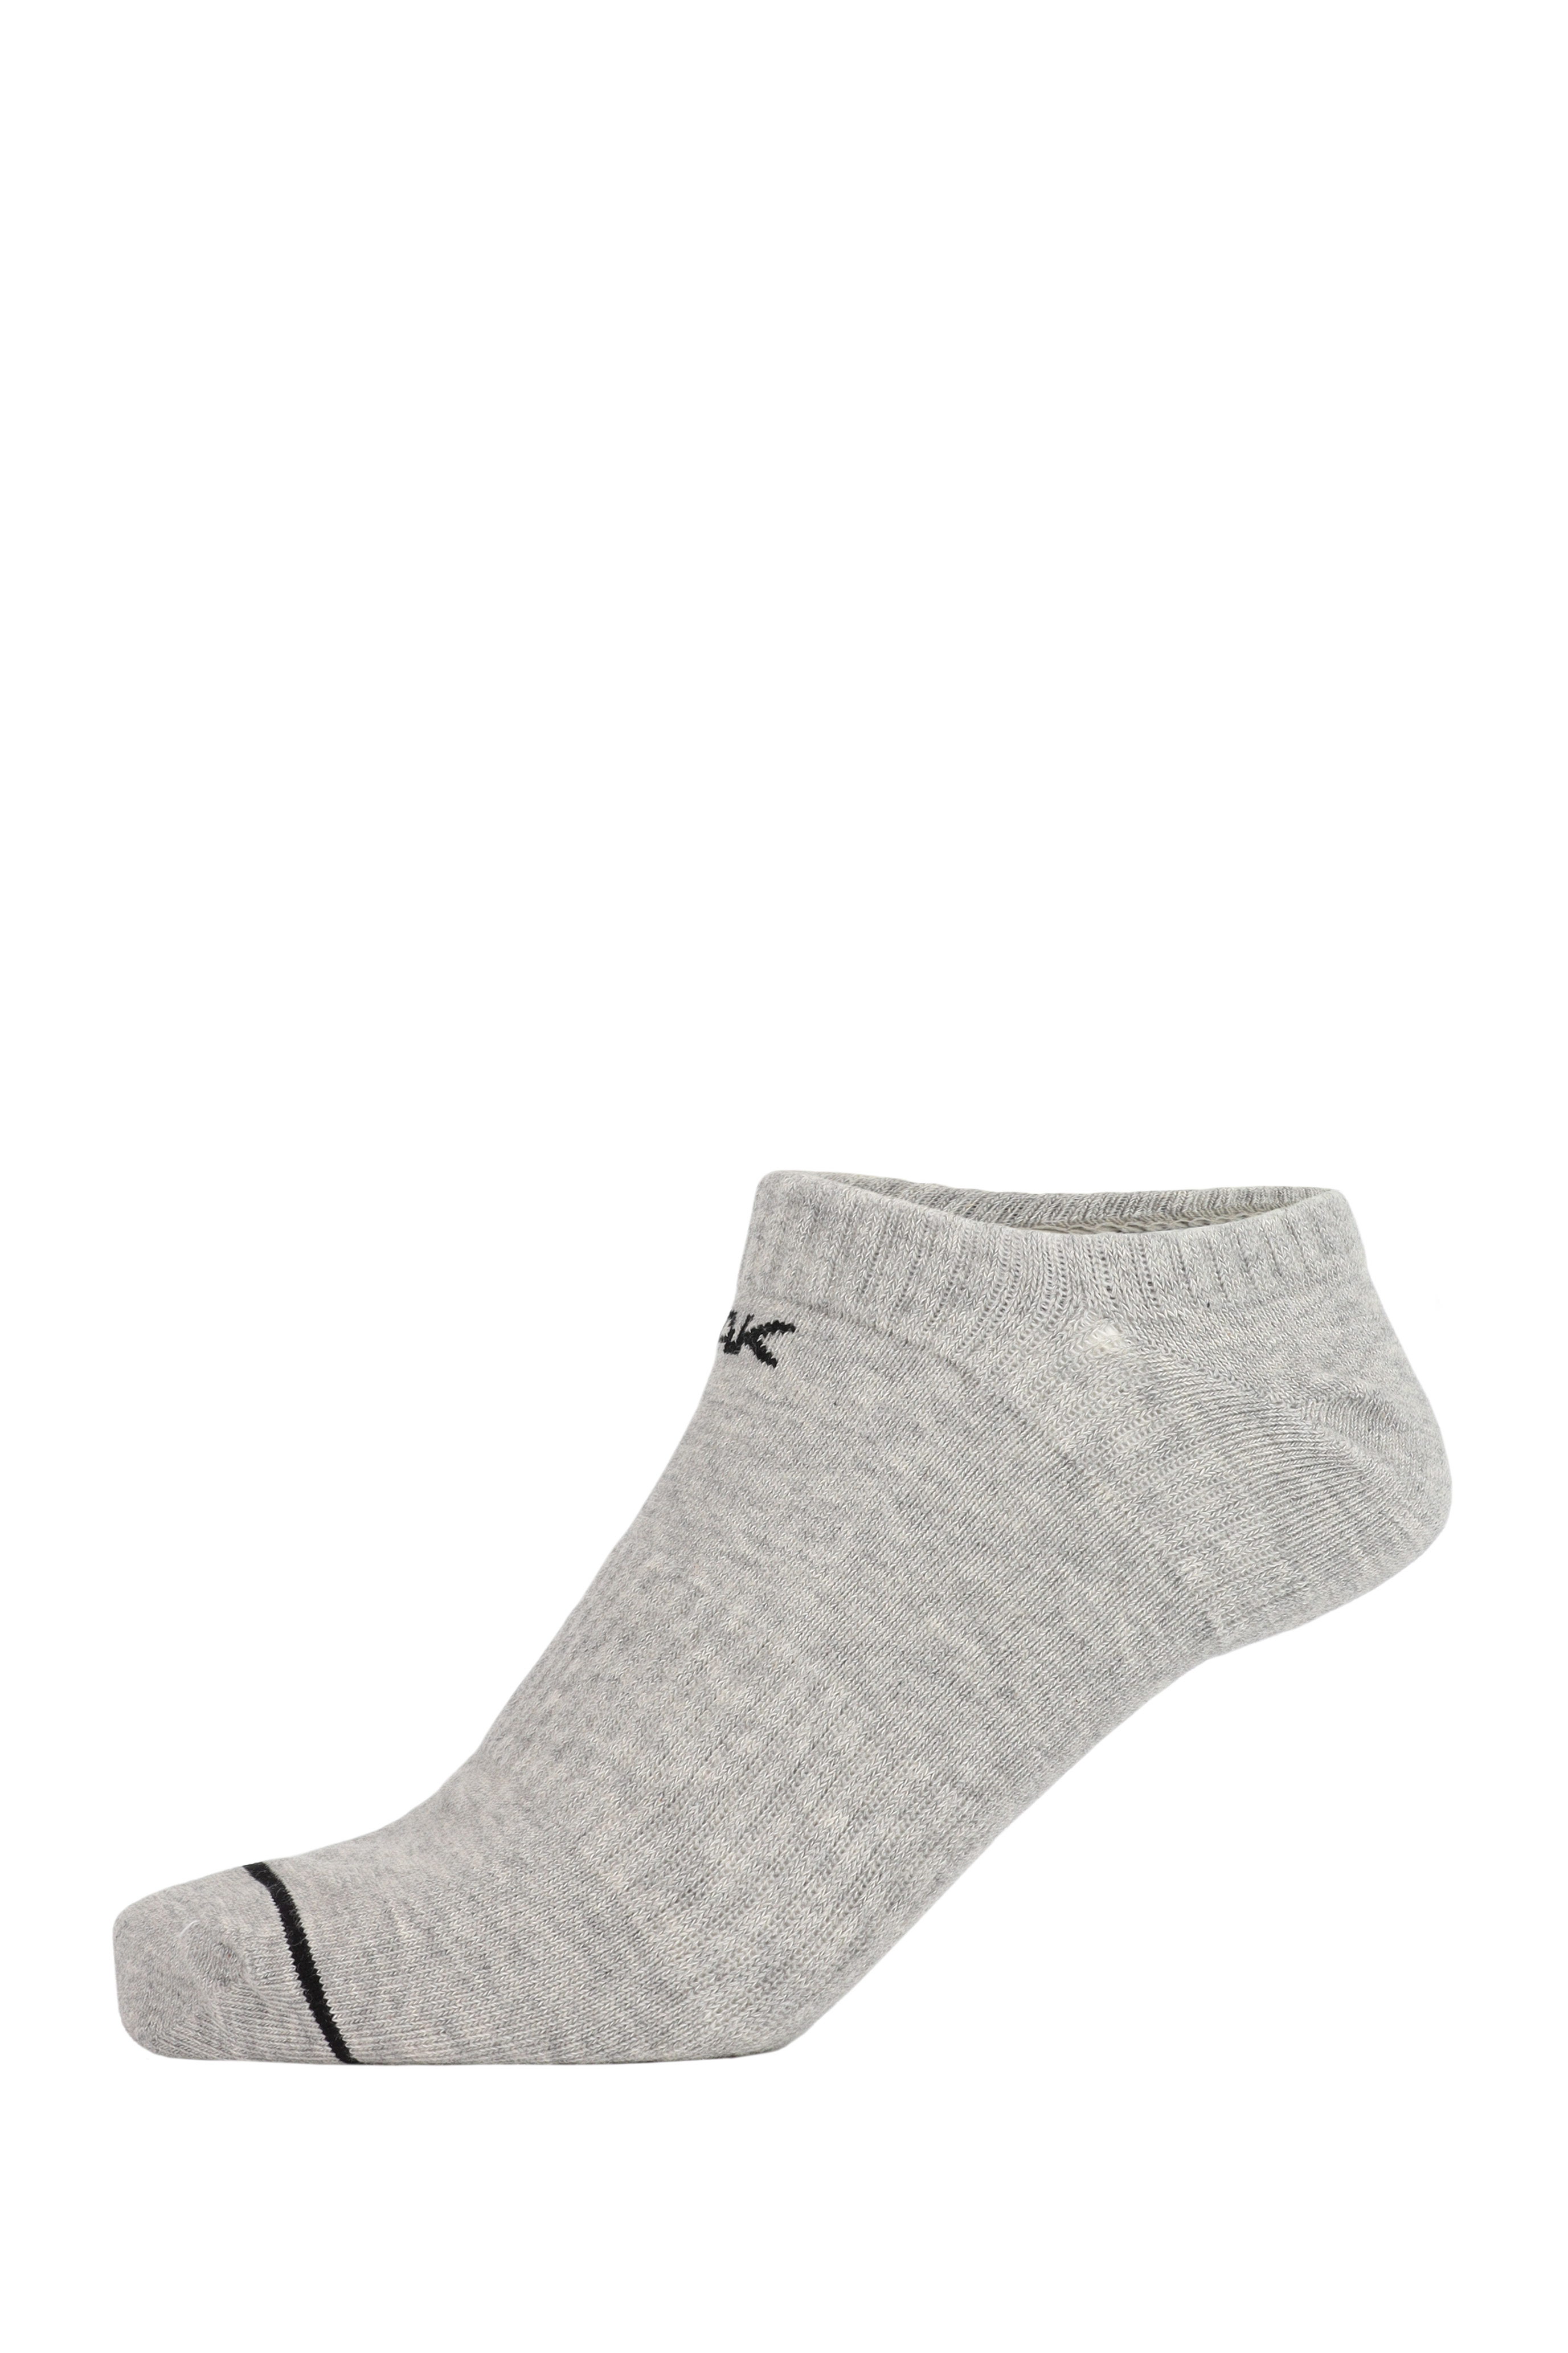 PEAK Anklet Socks Stripe